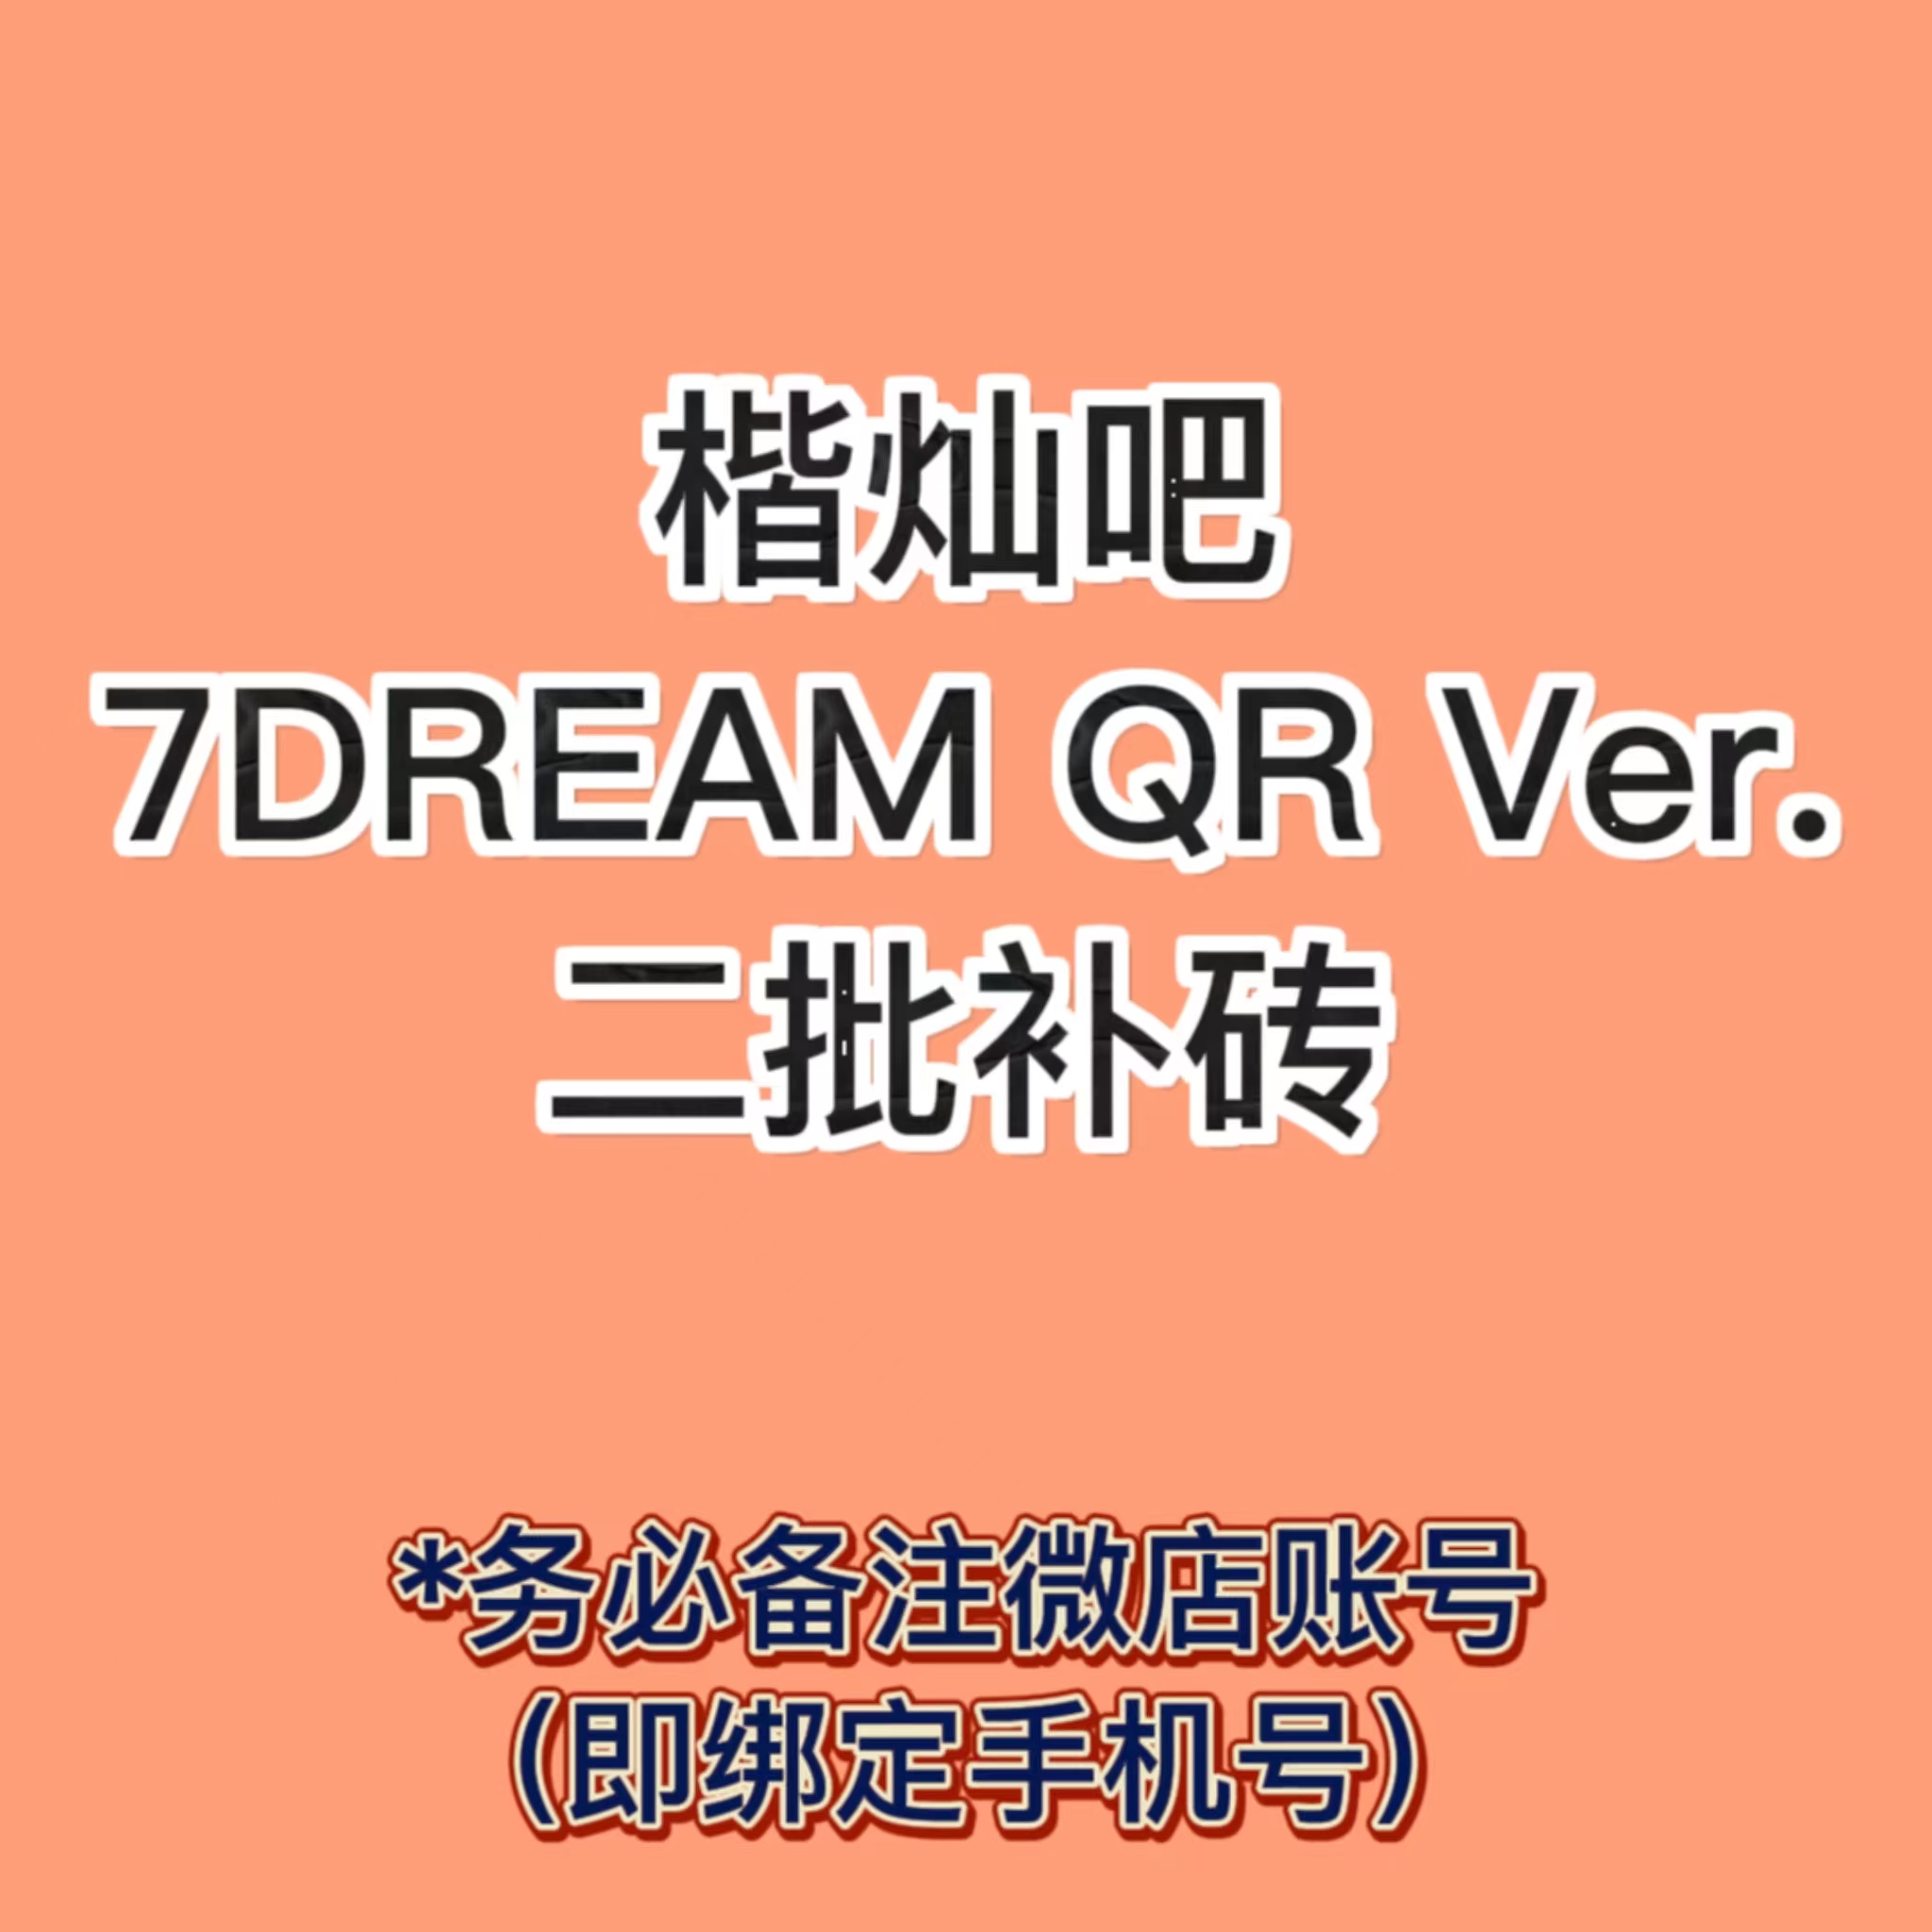 [全款 补专 第二批(截止至7.23早7点] NCT DREAM - 正规3辑 [ISTJ] (7DREAM QR Ver.) (Smart Album) (随机版本)_楷灿吧_HaeChanBar